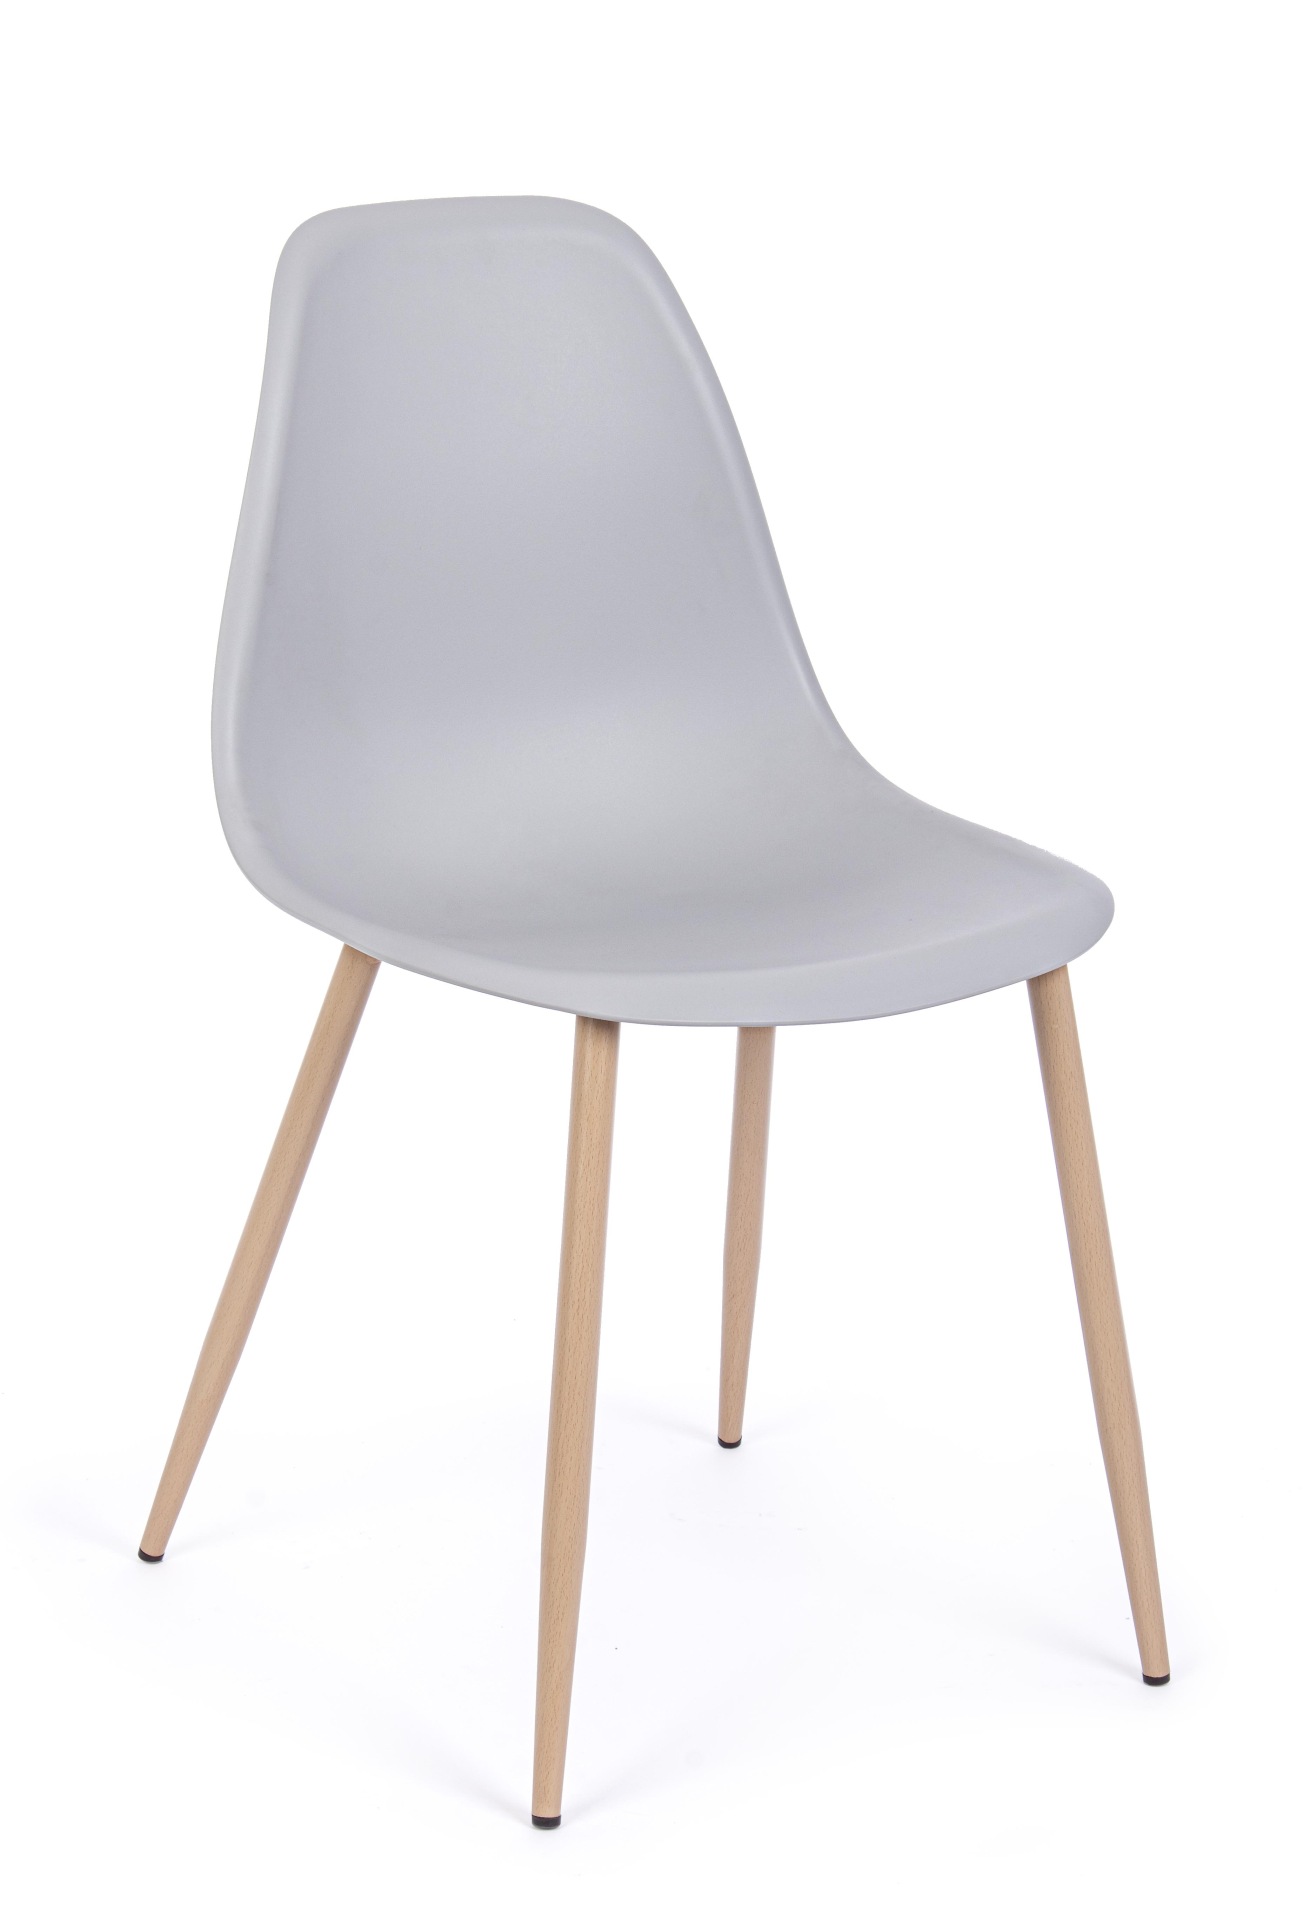 Der Stuhl Mandy überzeugt mit seinem modernem Design. Gefertigt wurde der Stuhl aus Kunststoff, welcher einen grauen Farbton besitzt. Das Gestell ist aus Metall, welches eine Holz-Optik besitzt. Die Sitzhöhe des Stuhls ist 45 cm.